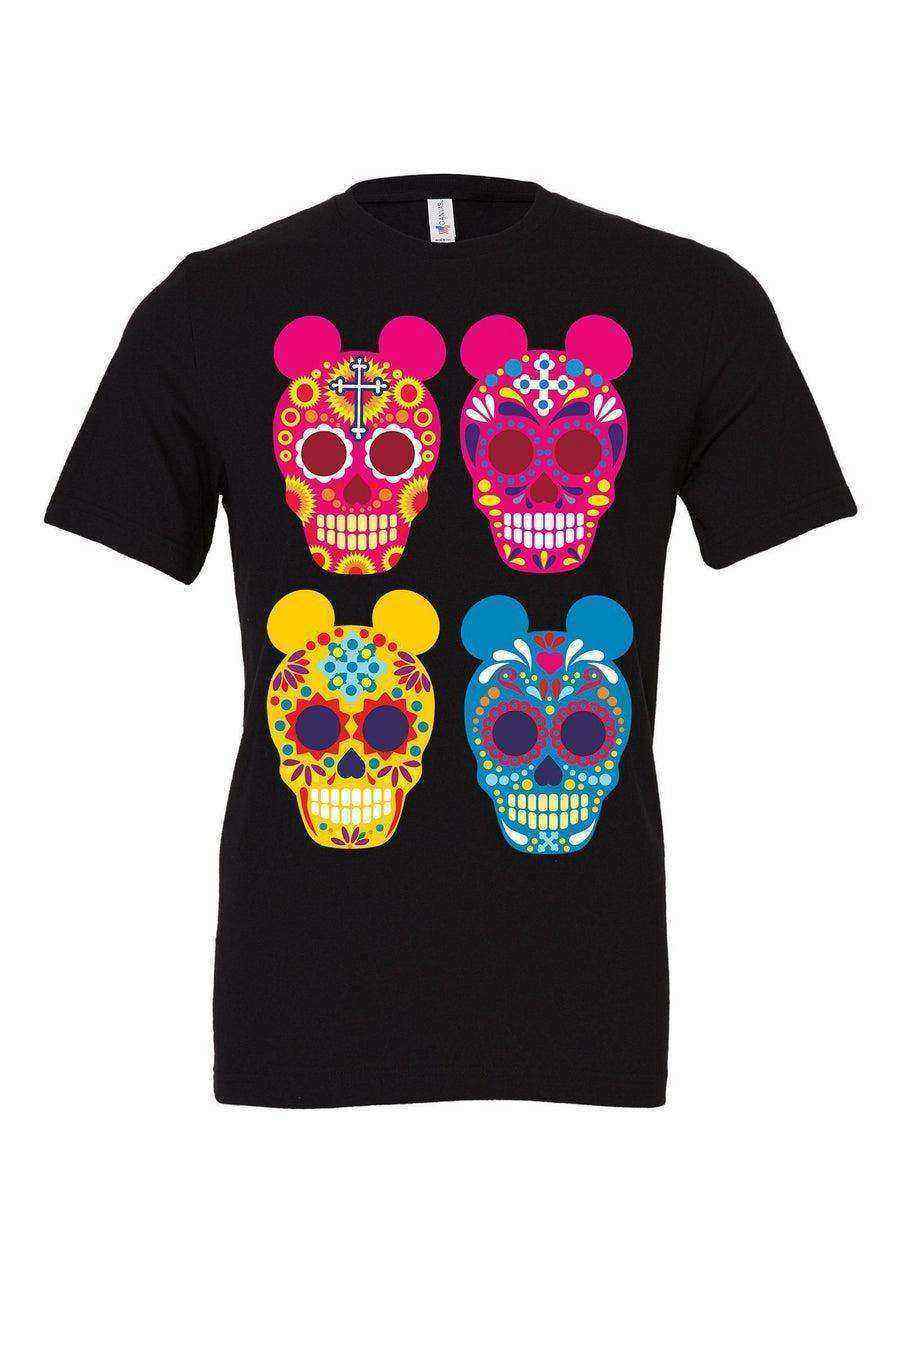 Sugar Skull Mickey Shirt | Coco Shirt - Dylan's Tees